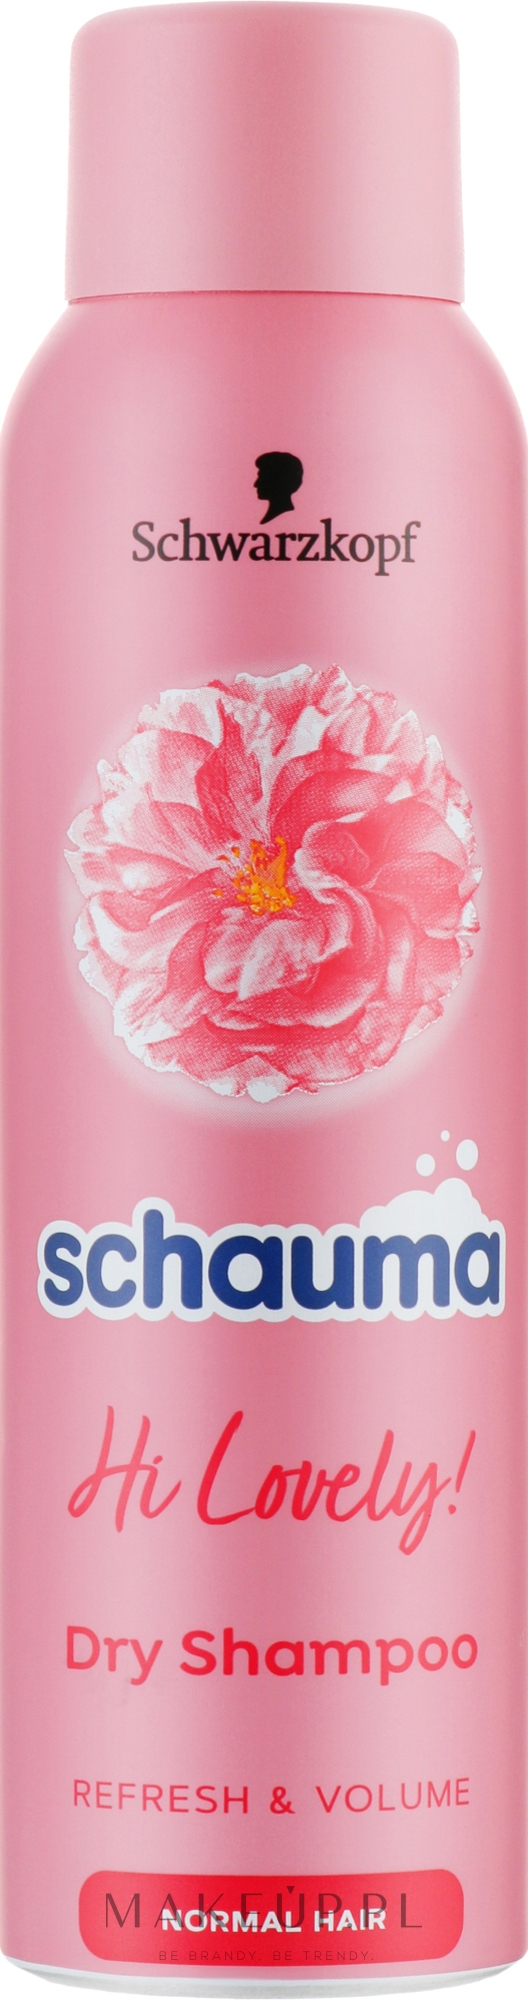 Oczyszczający suchy szampon do włosów normalnych - Schwarzkopf Schauma Hi Lovely — Zdjęcie 150 ml